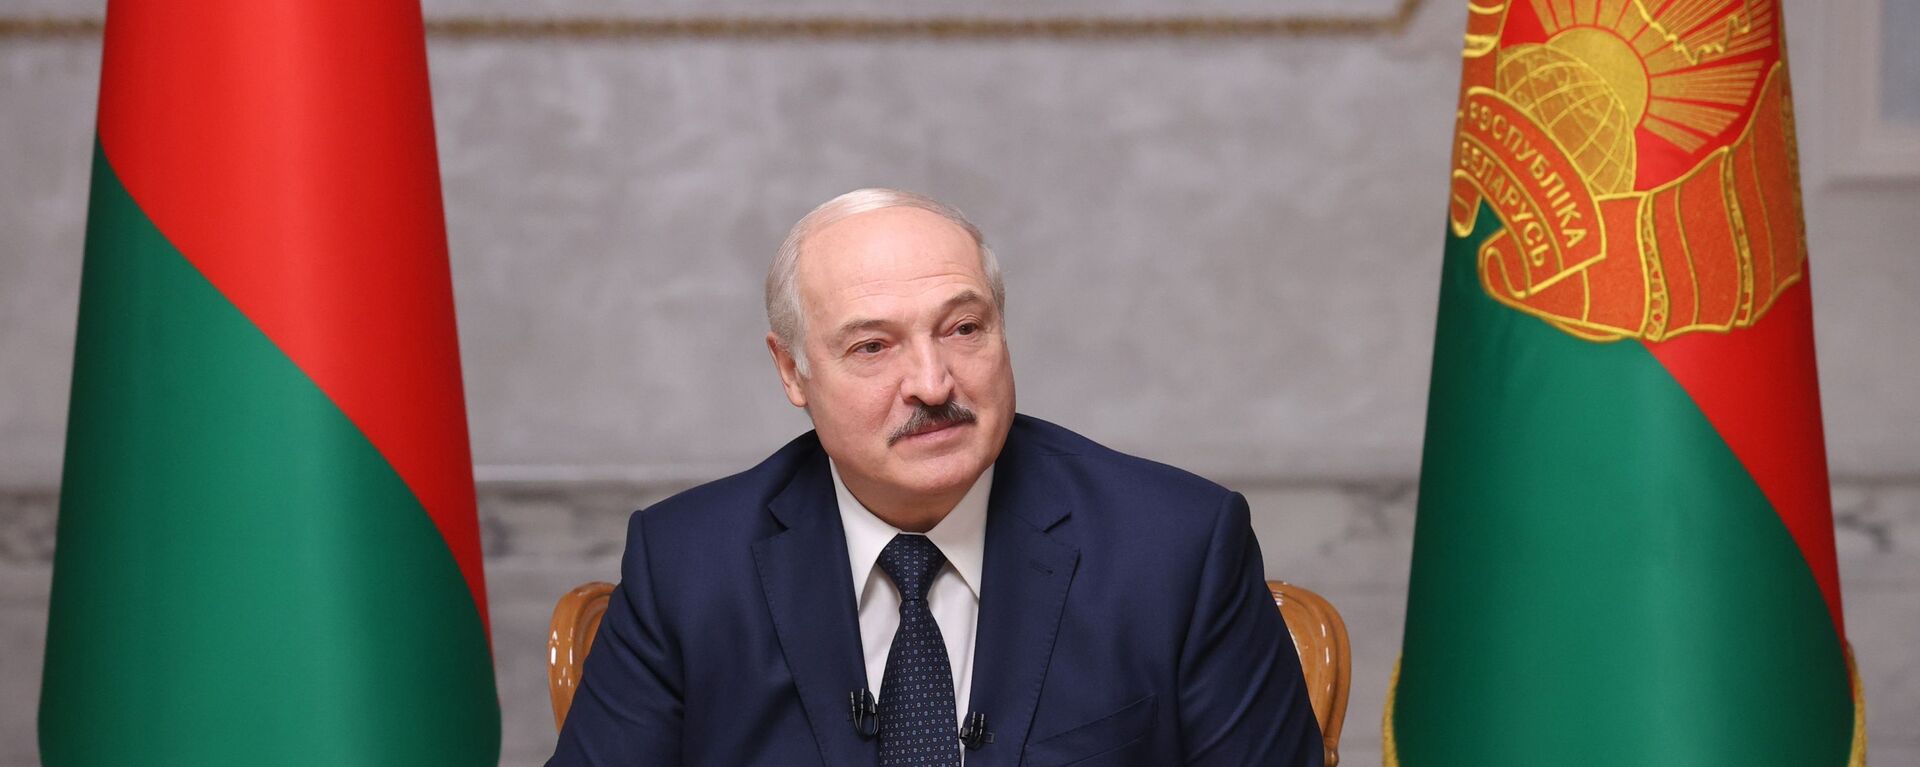 Predsednik Belorusije Aleksandar Lukašenko - Sputnik Srbija, 1920, 22.06.2021